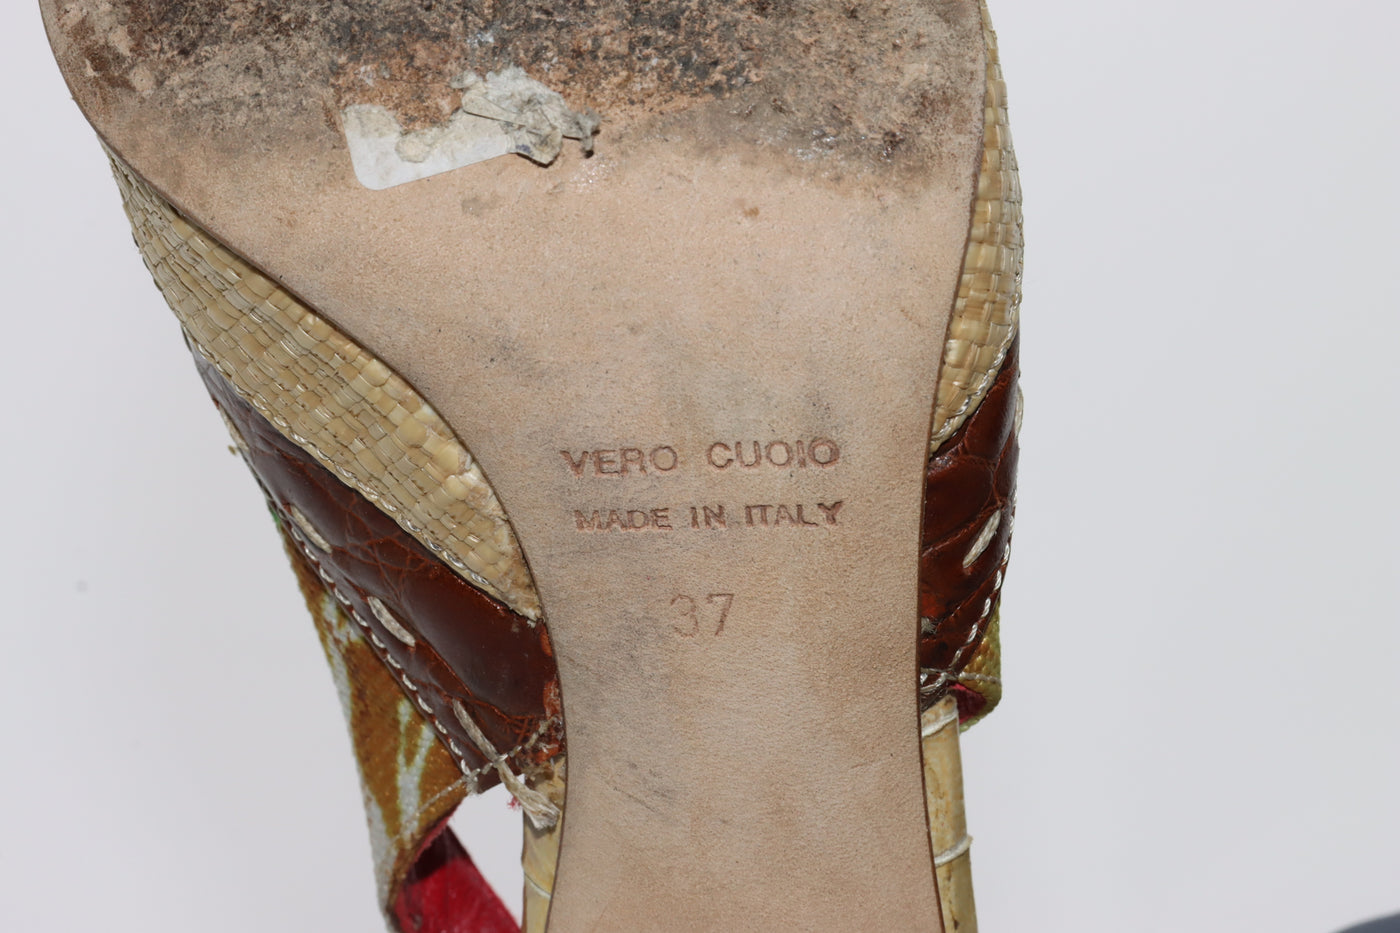 Barbarella Sandalo Vintage Anni 70'/80' Basse Beige Colorata Pitonata Eur 37 Donna